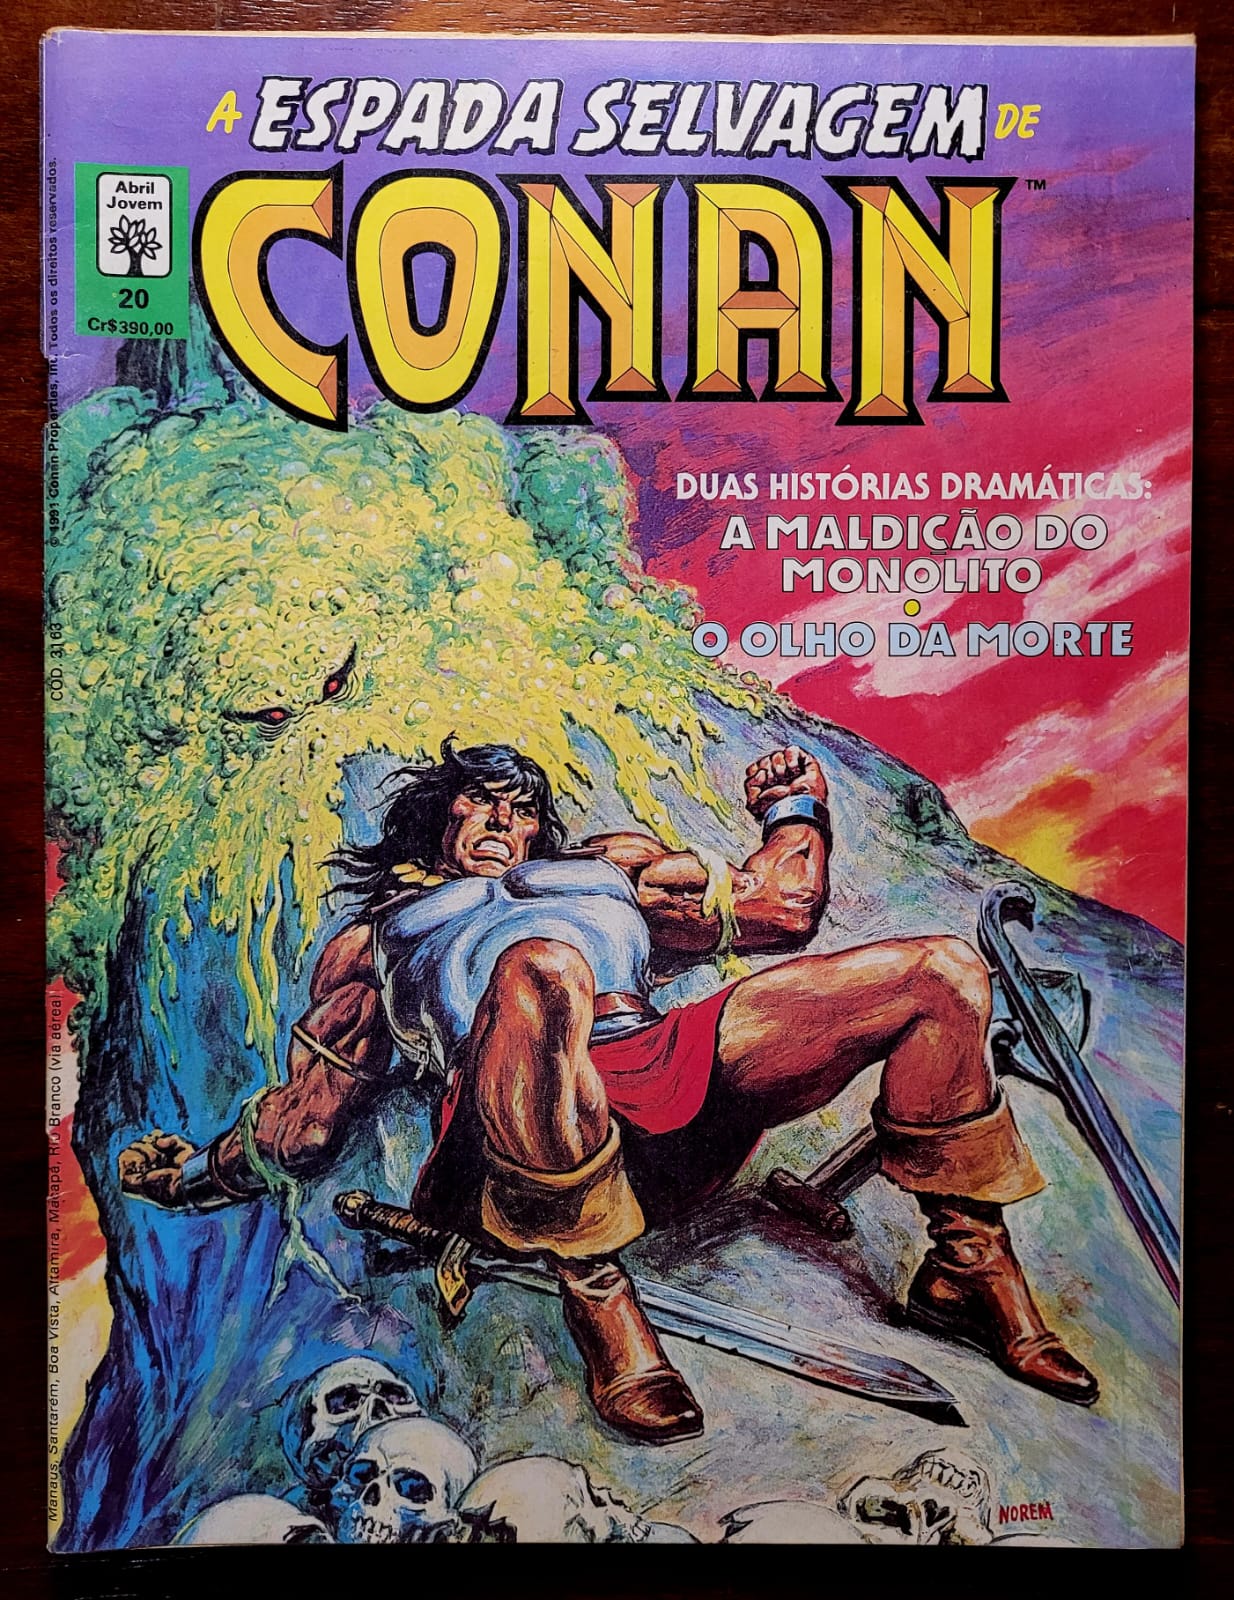 A Espada Selvagem de Conan No 20 1 Casa do Colecionador